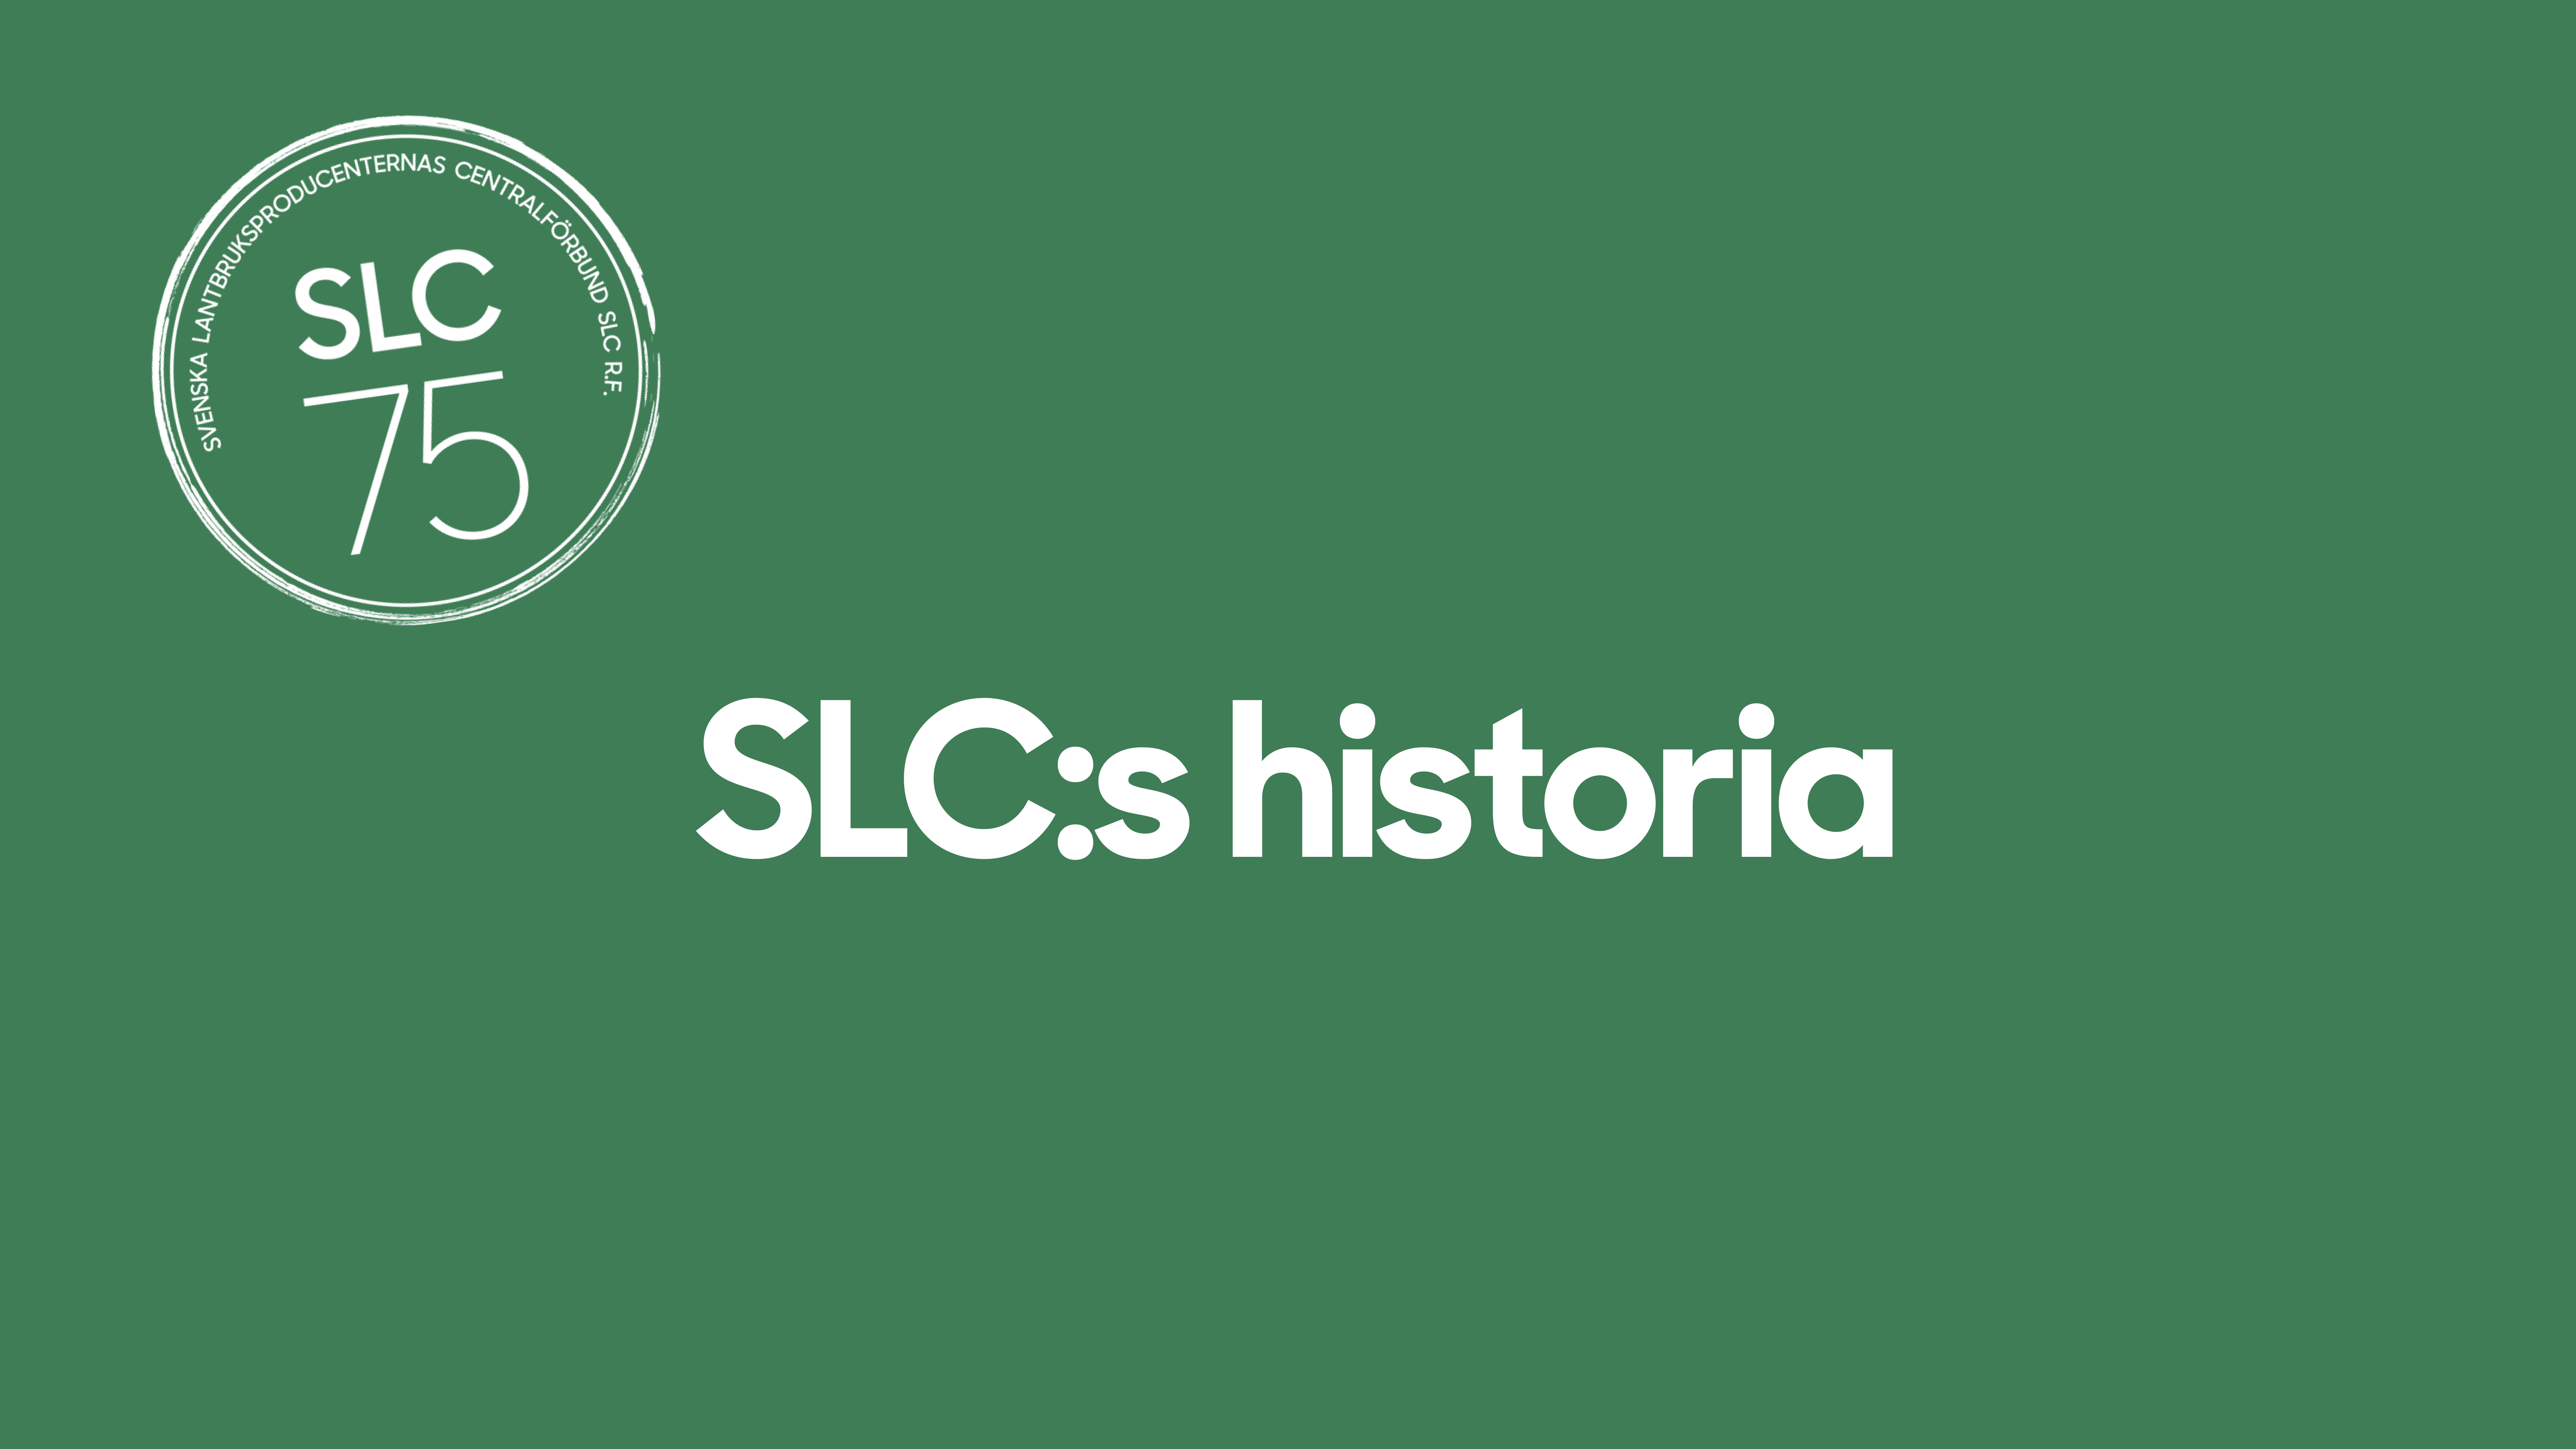 SLC - SLC historikvideo parm final